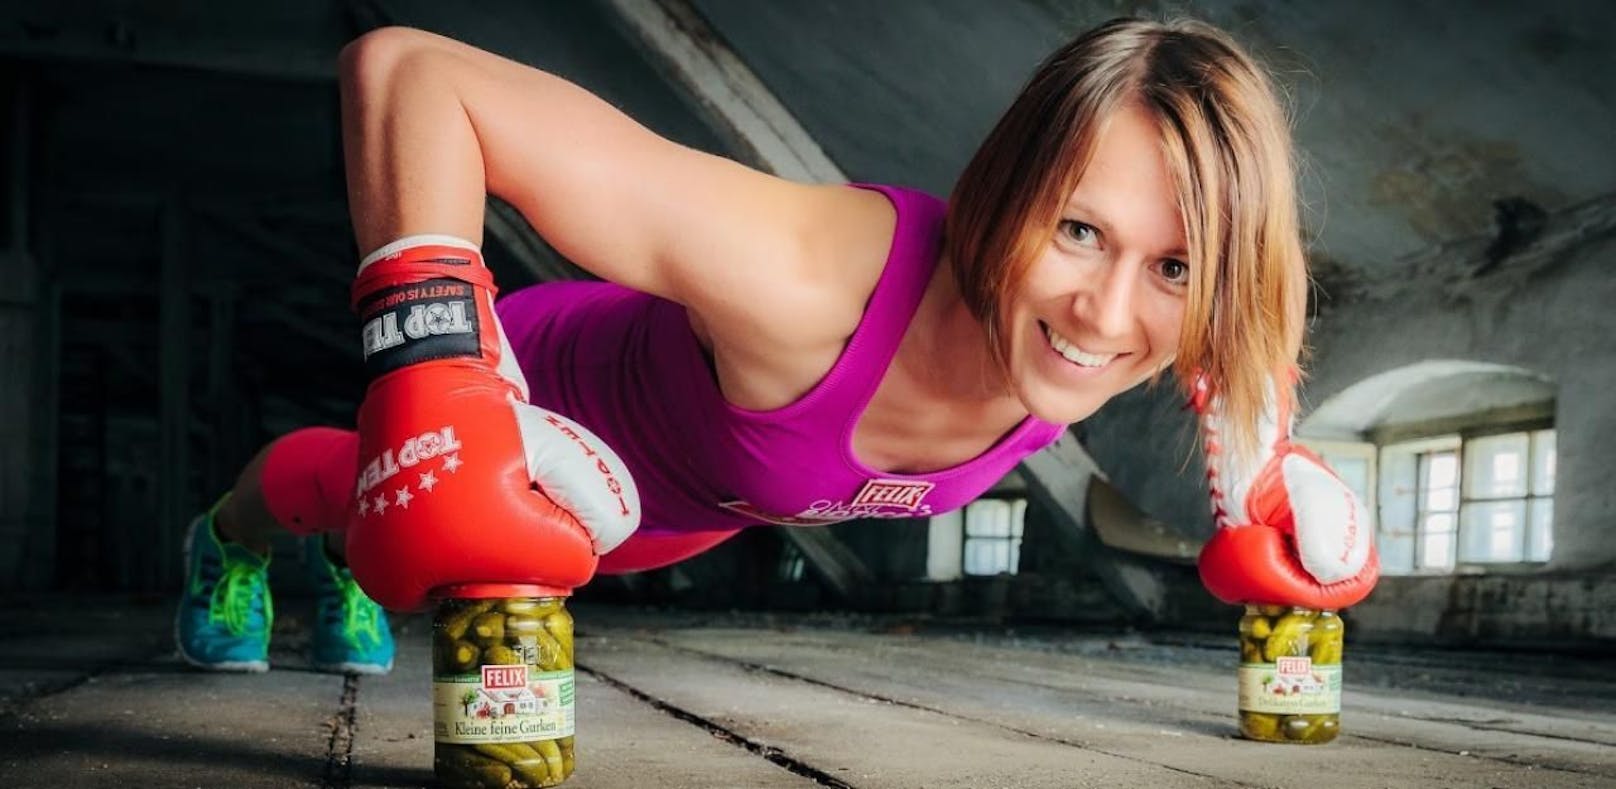 Kickbox-Star Nicole Trimmel kennt alle Tipps zum Traumbody.